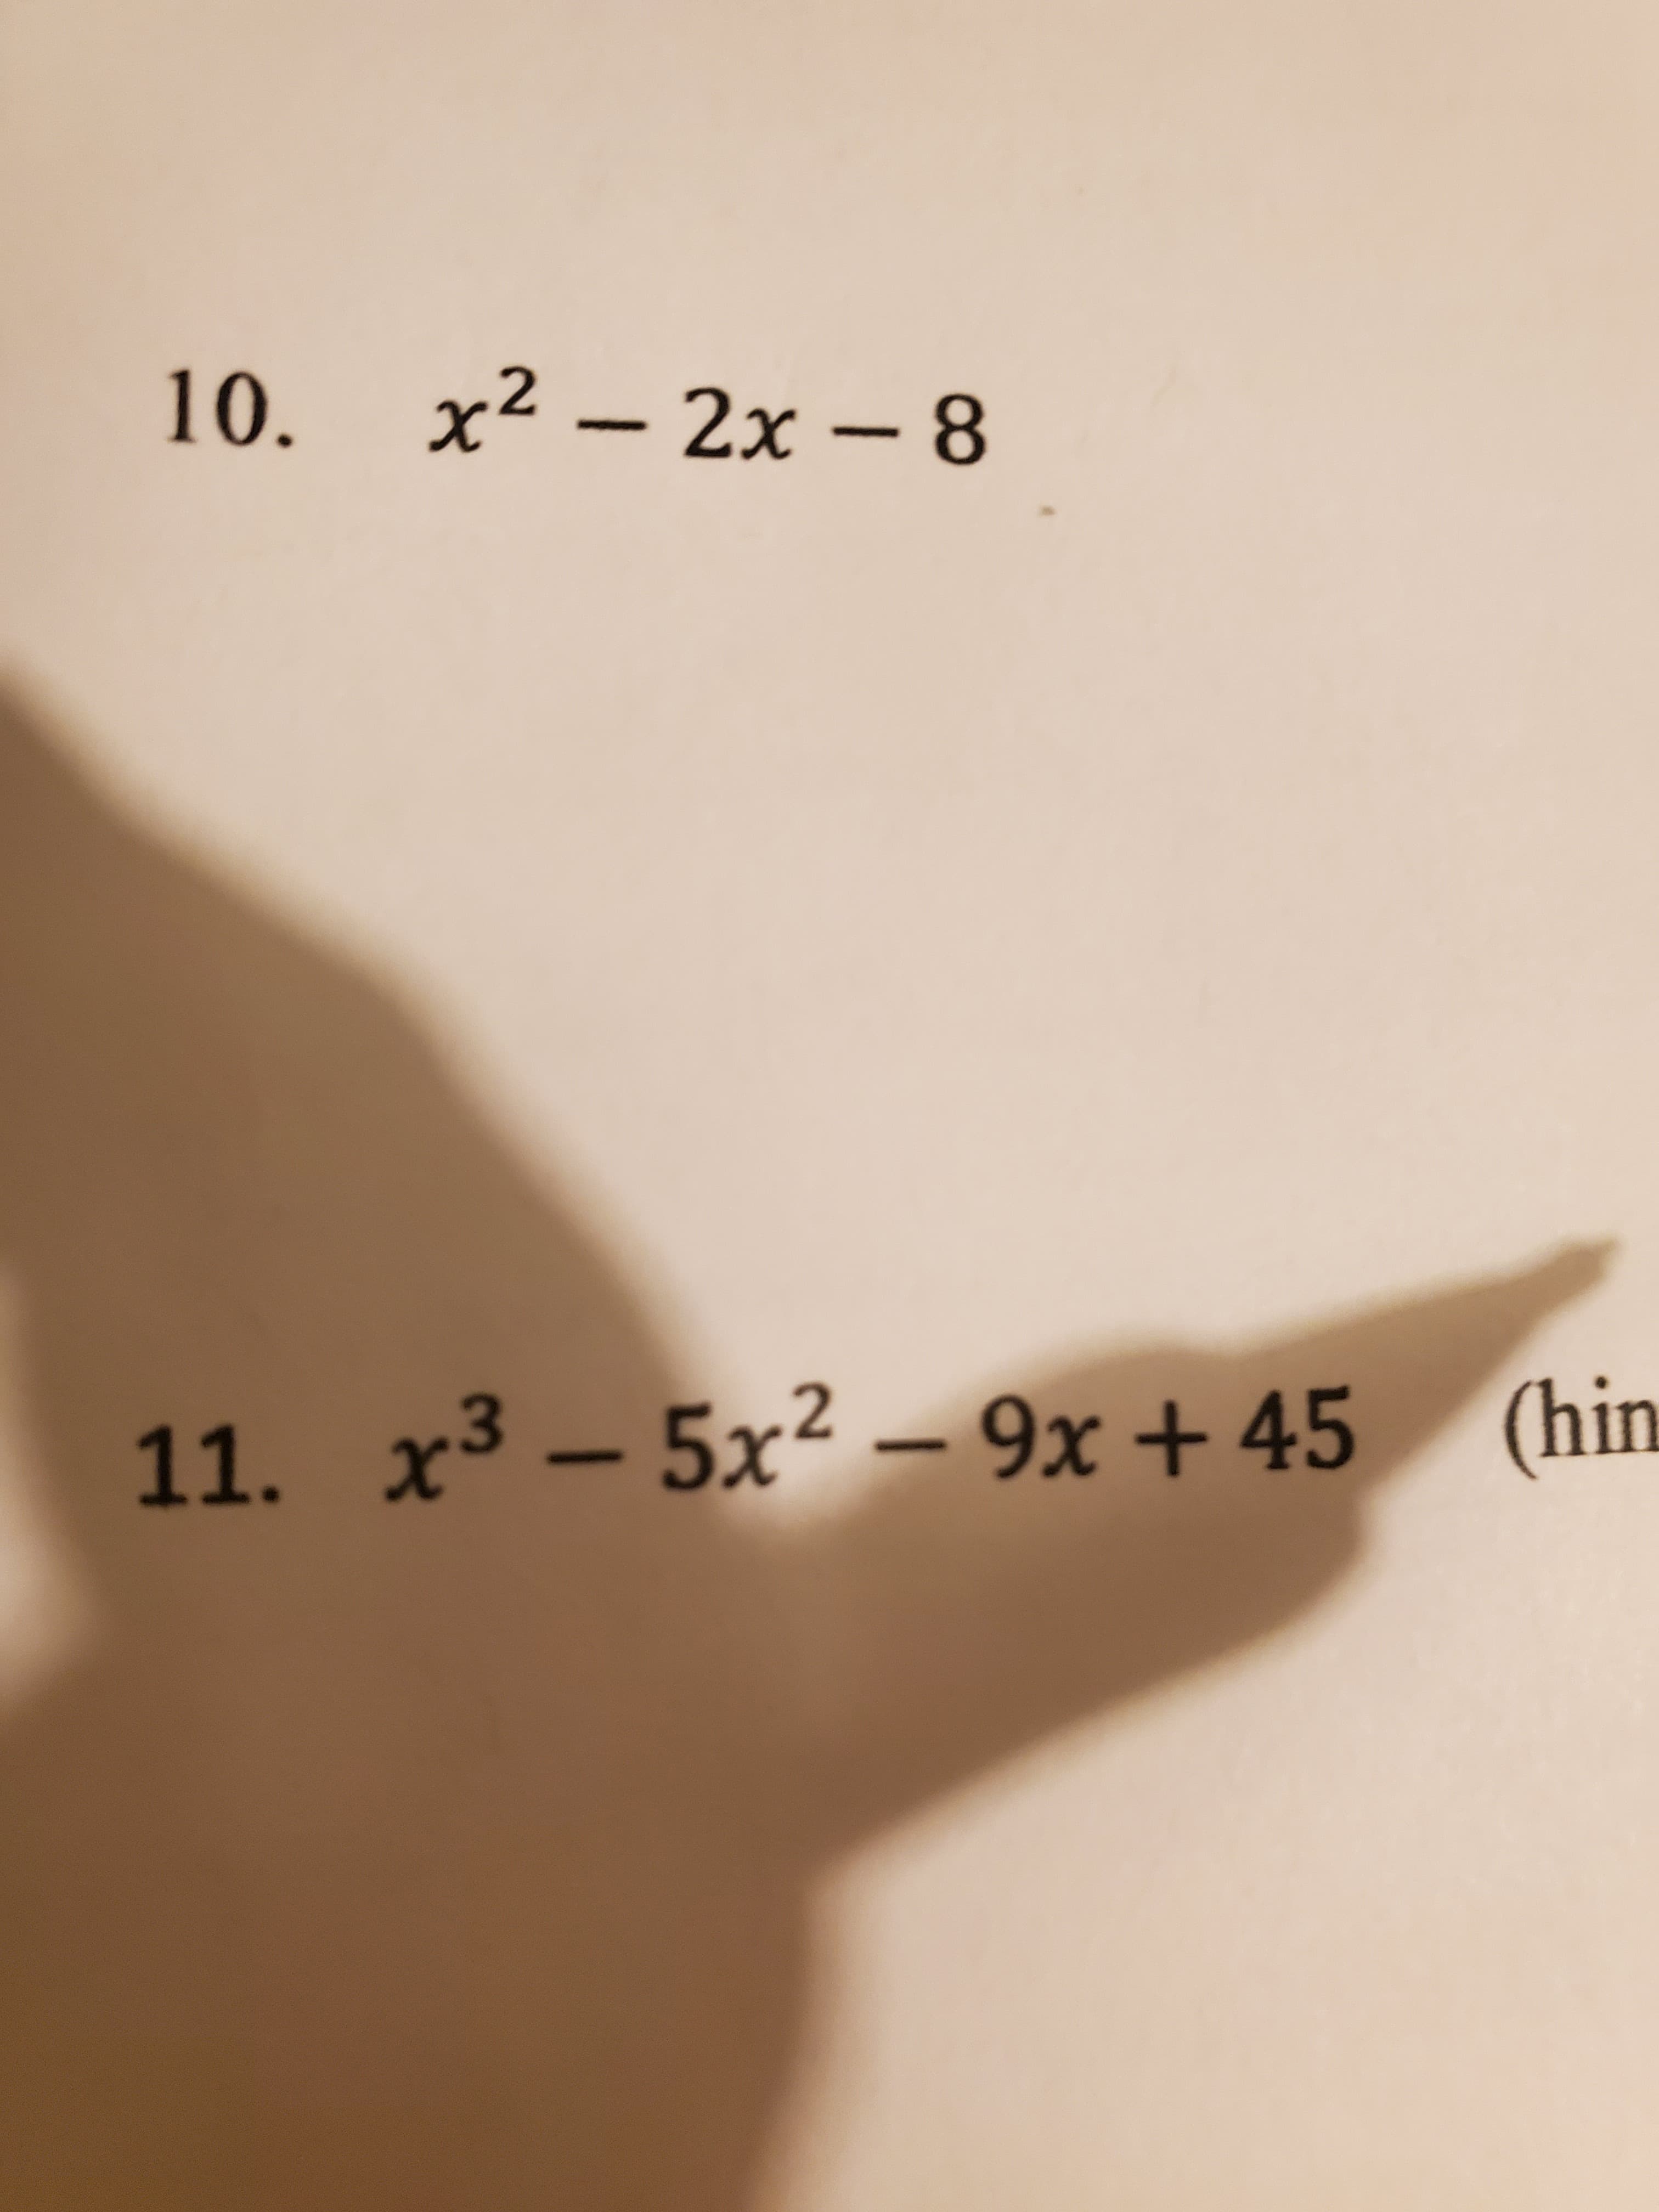 10. x² – 2x - 8
11. x³ – 5x2 – (hin
9x +45
